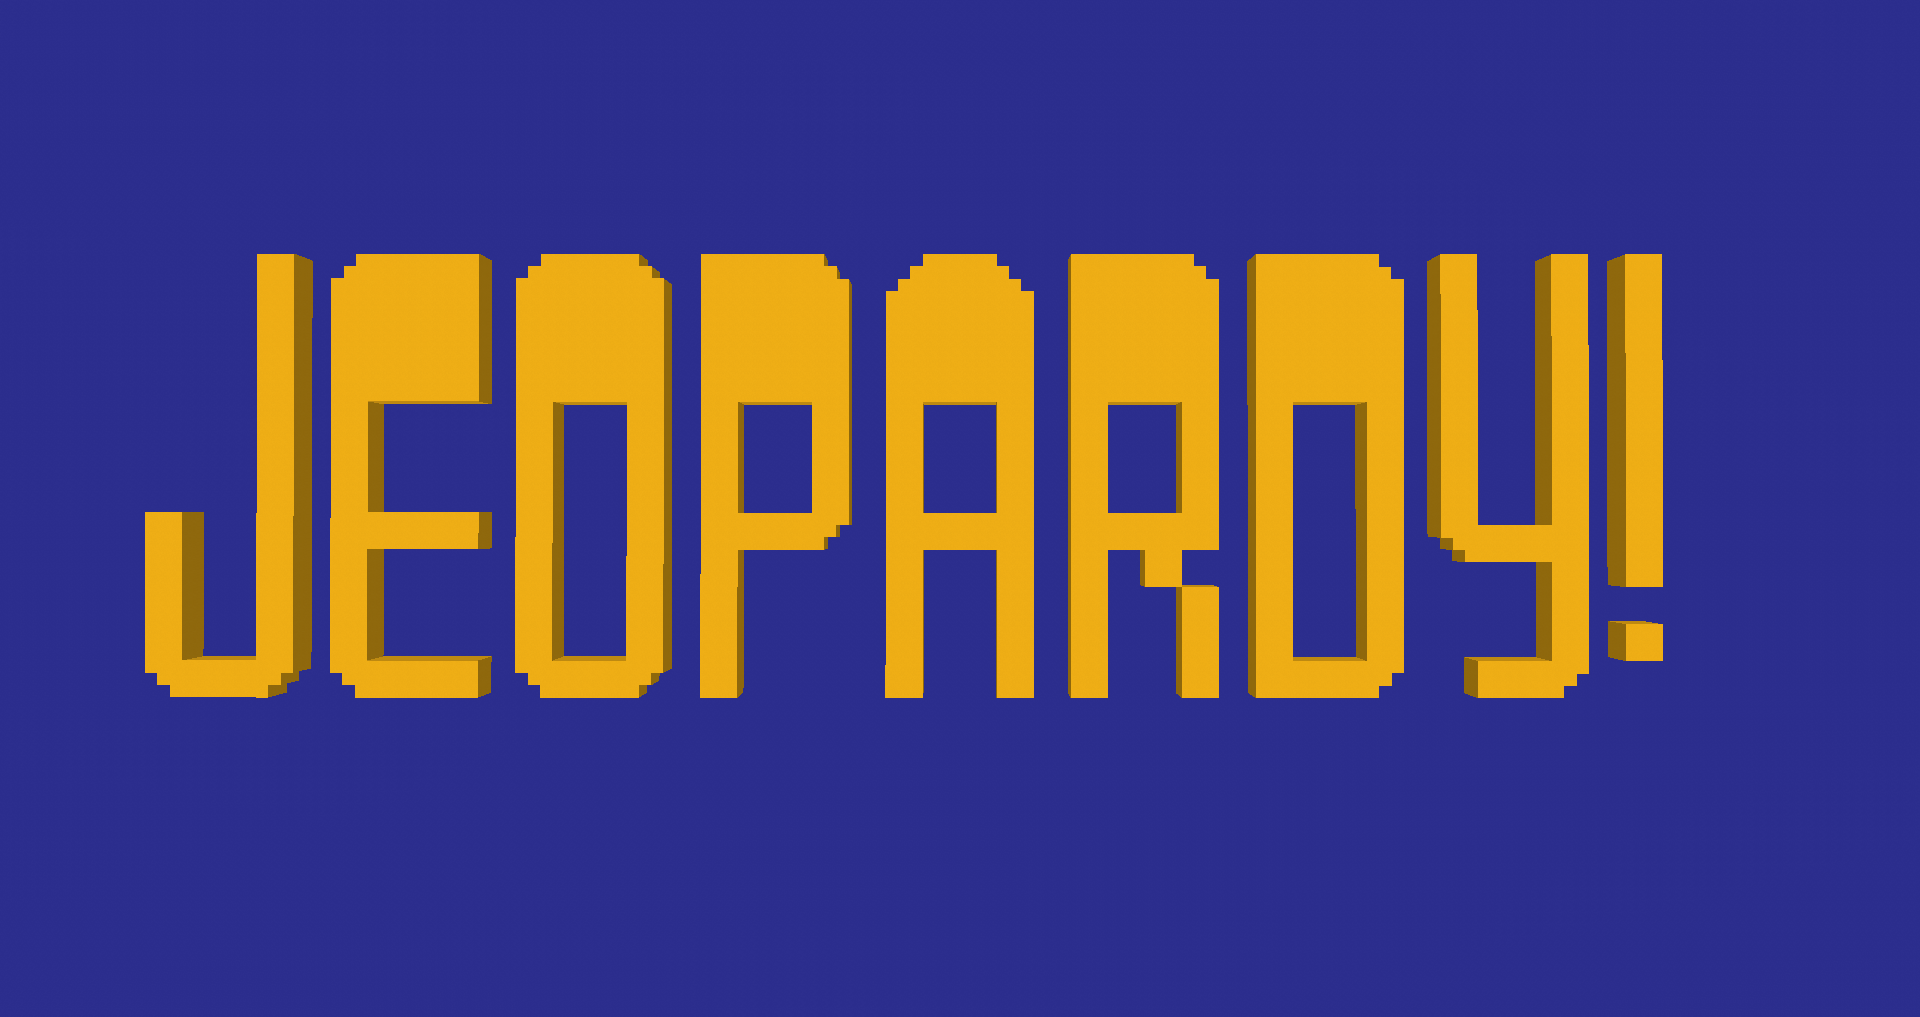 Jepardy Logo - So I made the J! logo in Minecraft : Jeopardy